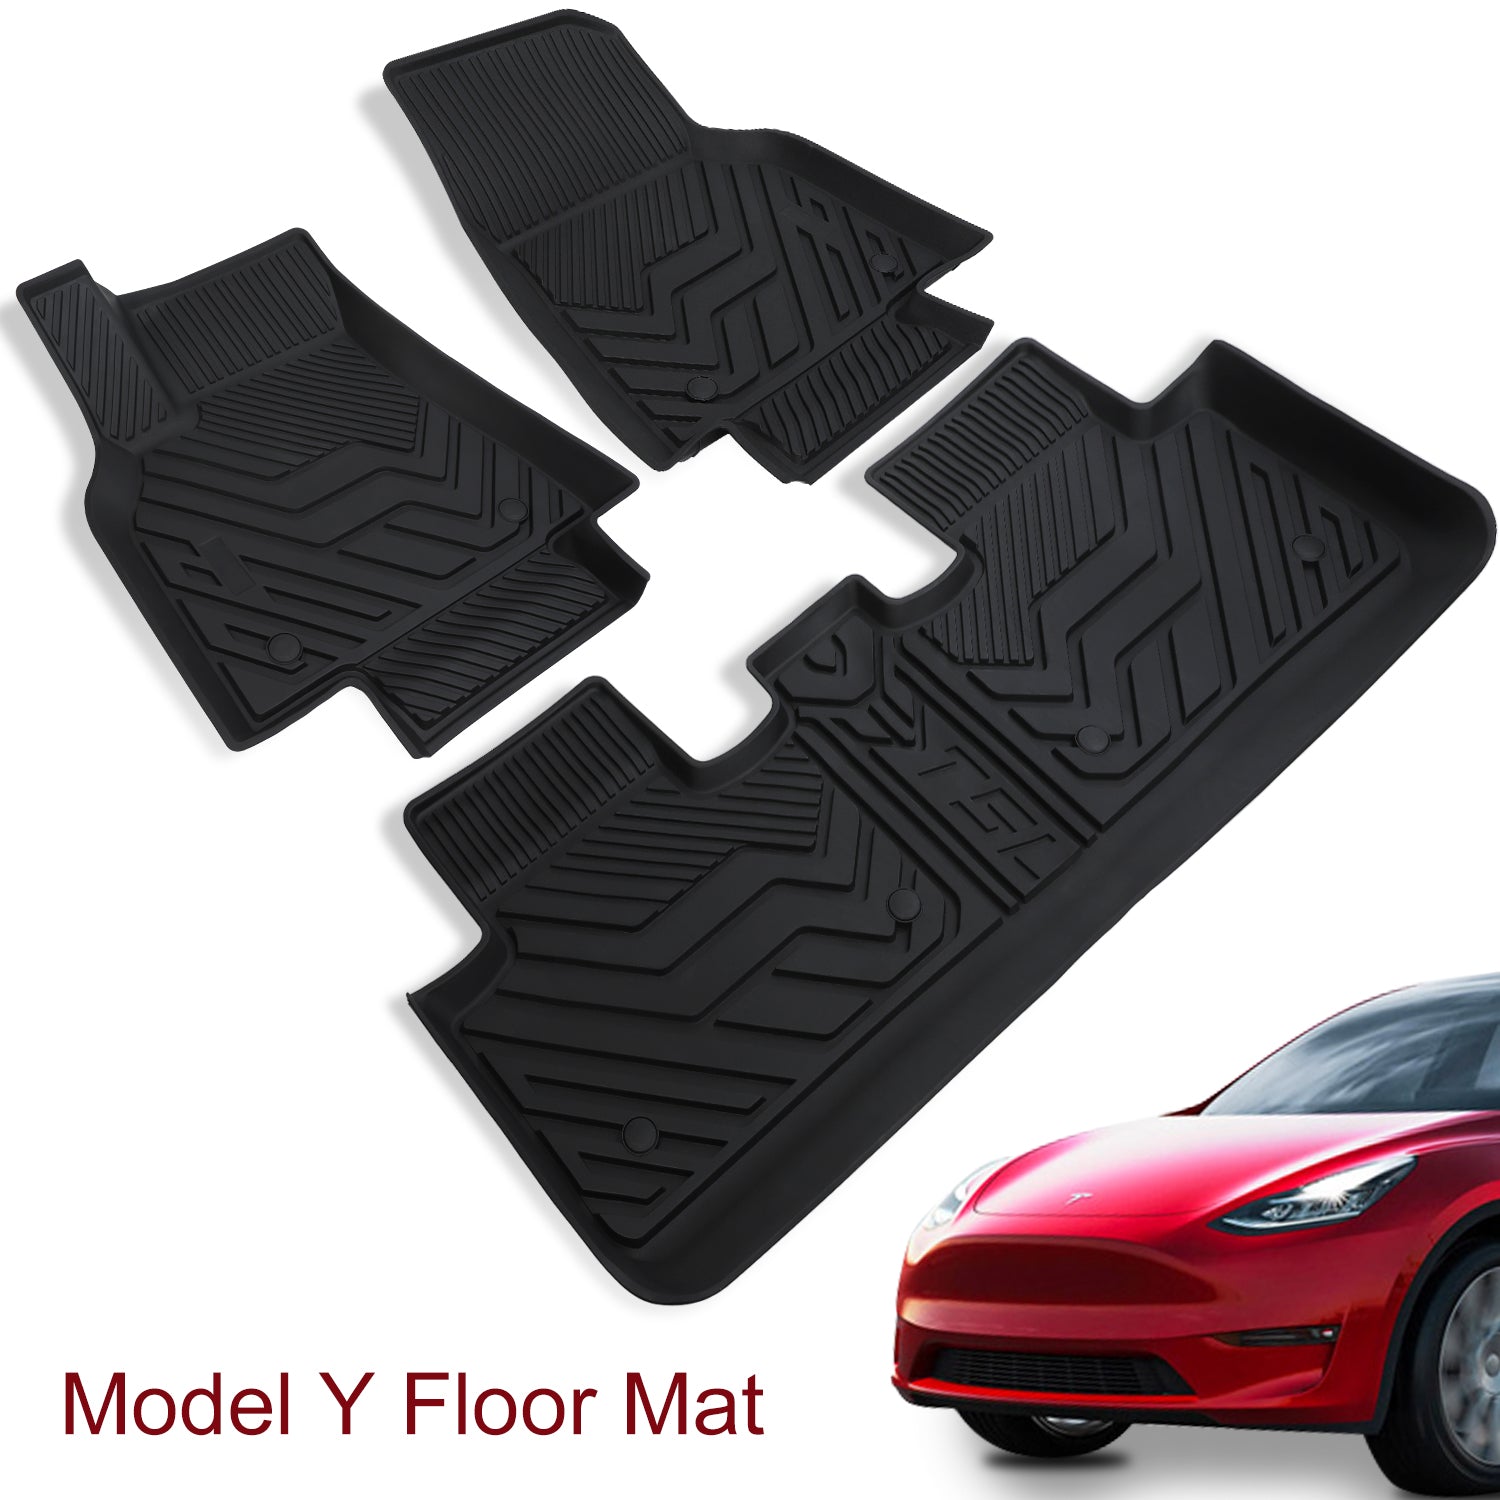 EVANNEX All-Weather Floor Mats for Tesla Model Y